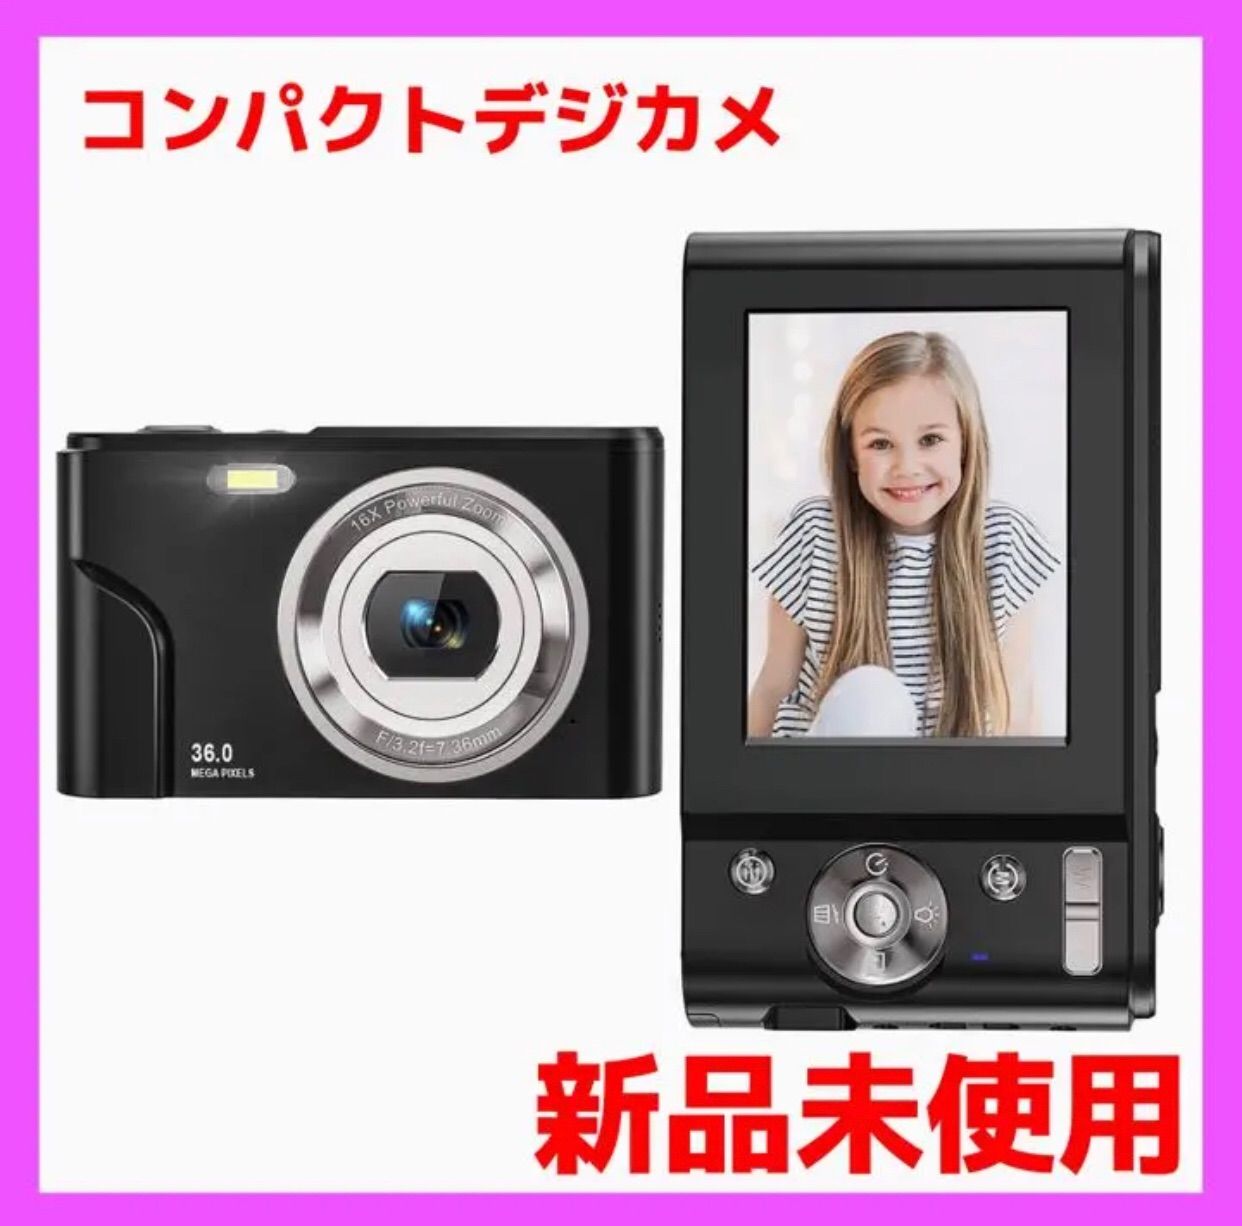 デジカメ MELCAM デジタル カメラ コンパクト HD1080P